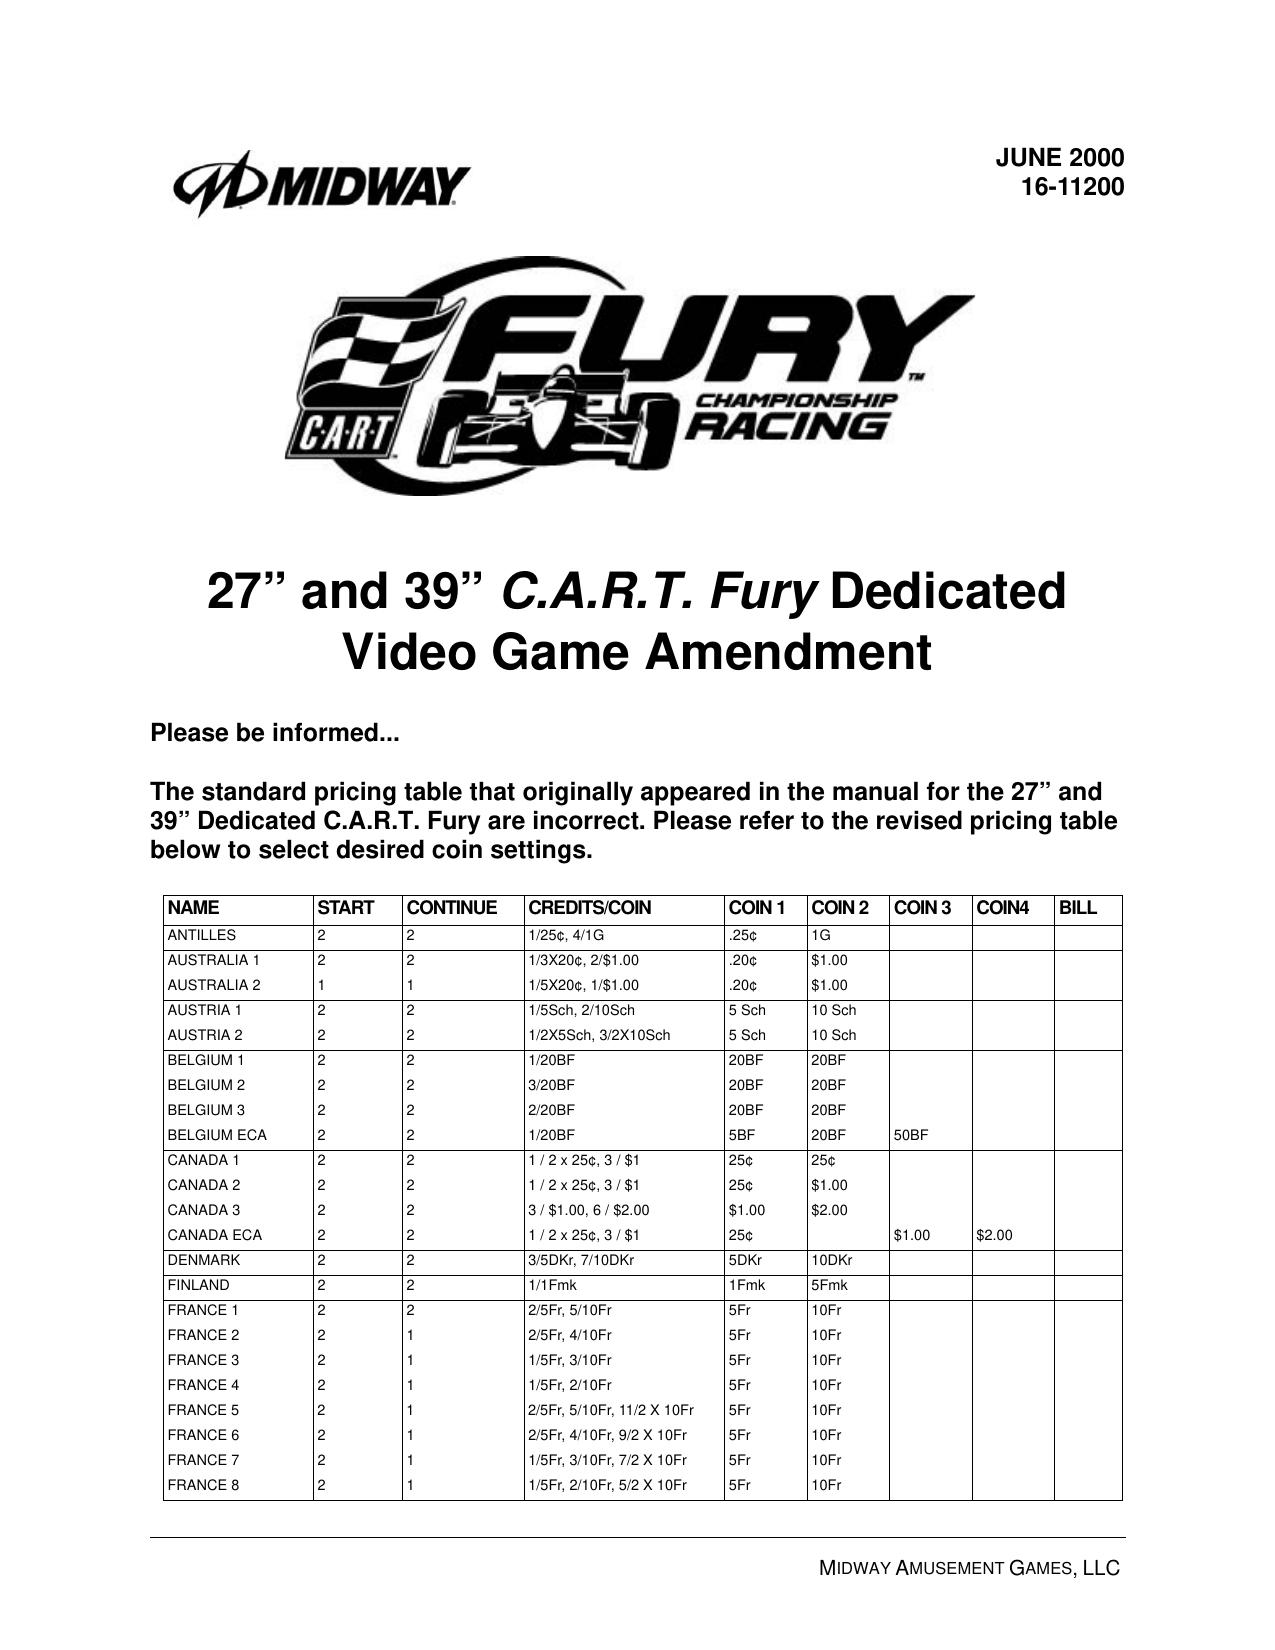 Cart Fury (Dedicated 27in and 39in) (Manual Amendment) (U)